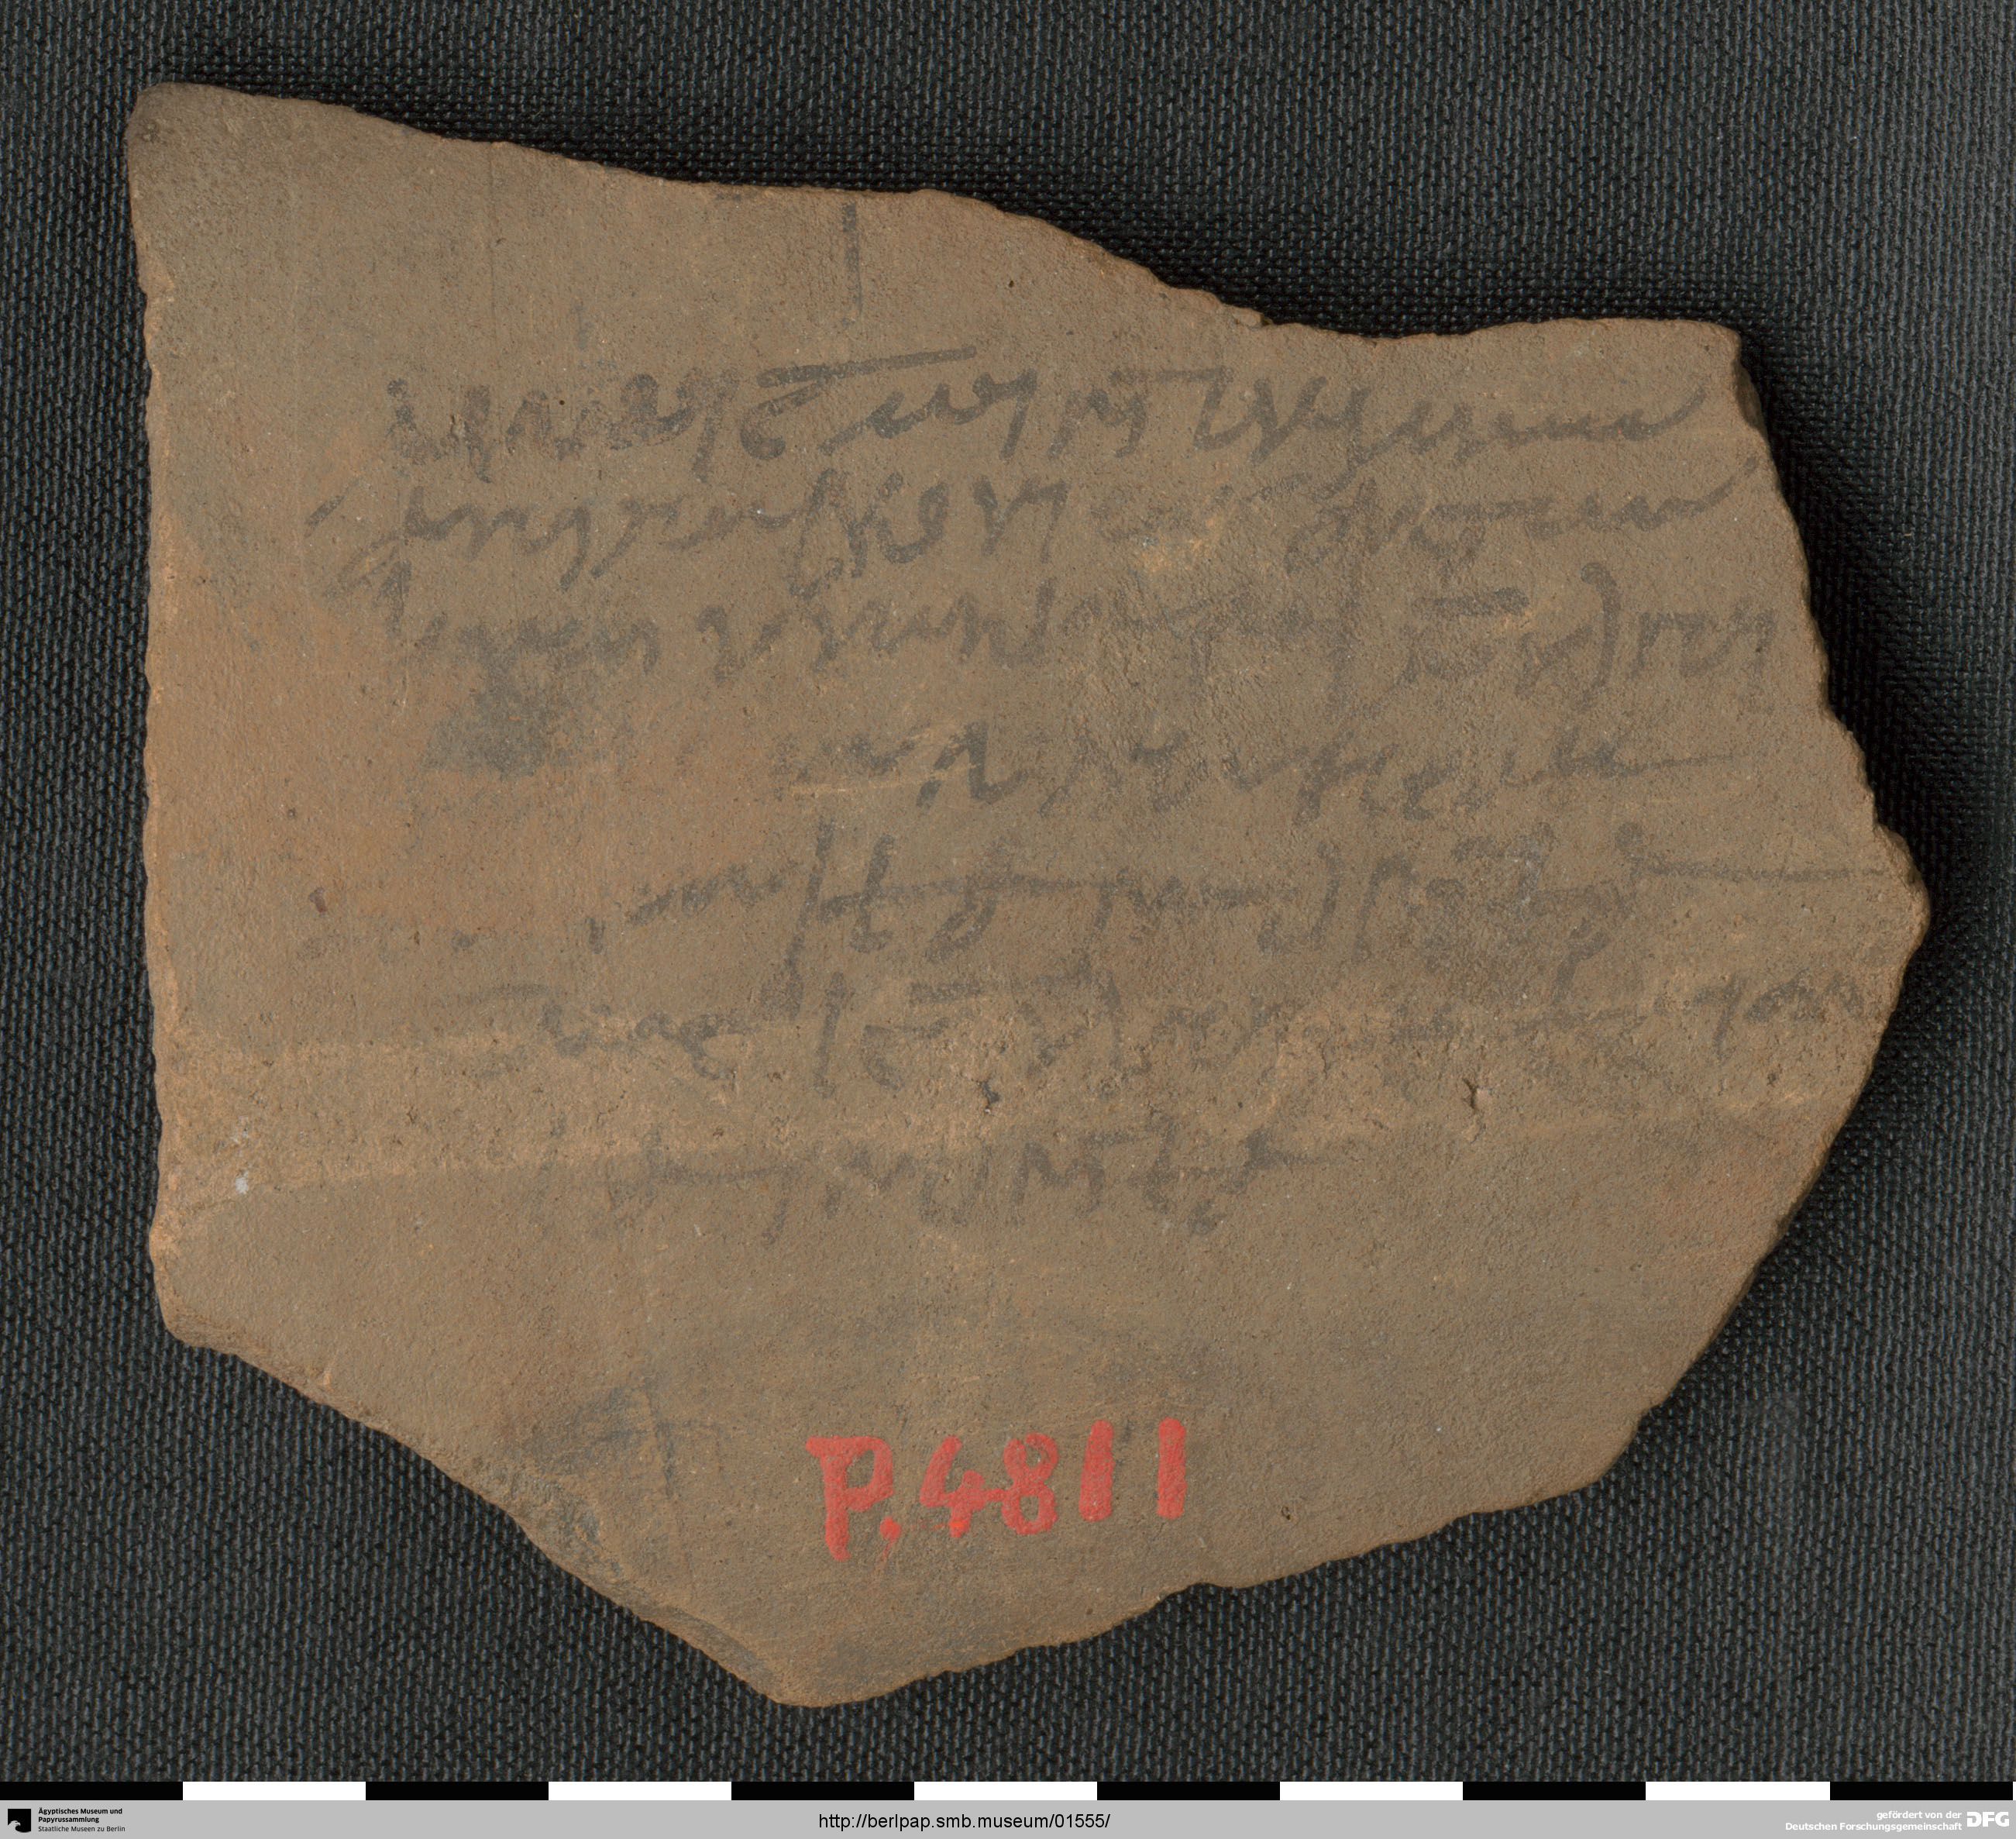 http://berlpap.smb.museum/Original/P_04811_S1_001.jpg (Ägyptisches Museum und Papyrussammlung, Staatliche Museen zu Berlin CC BY-NC-SA)